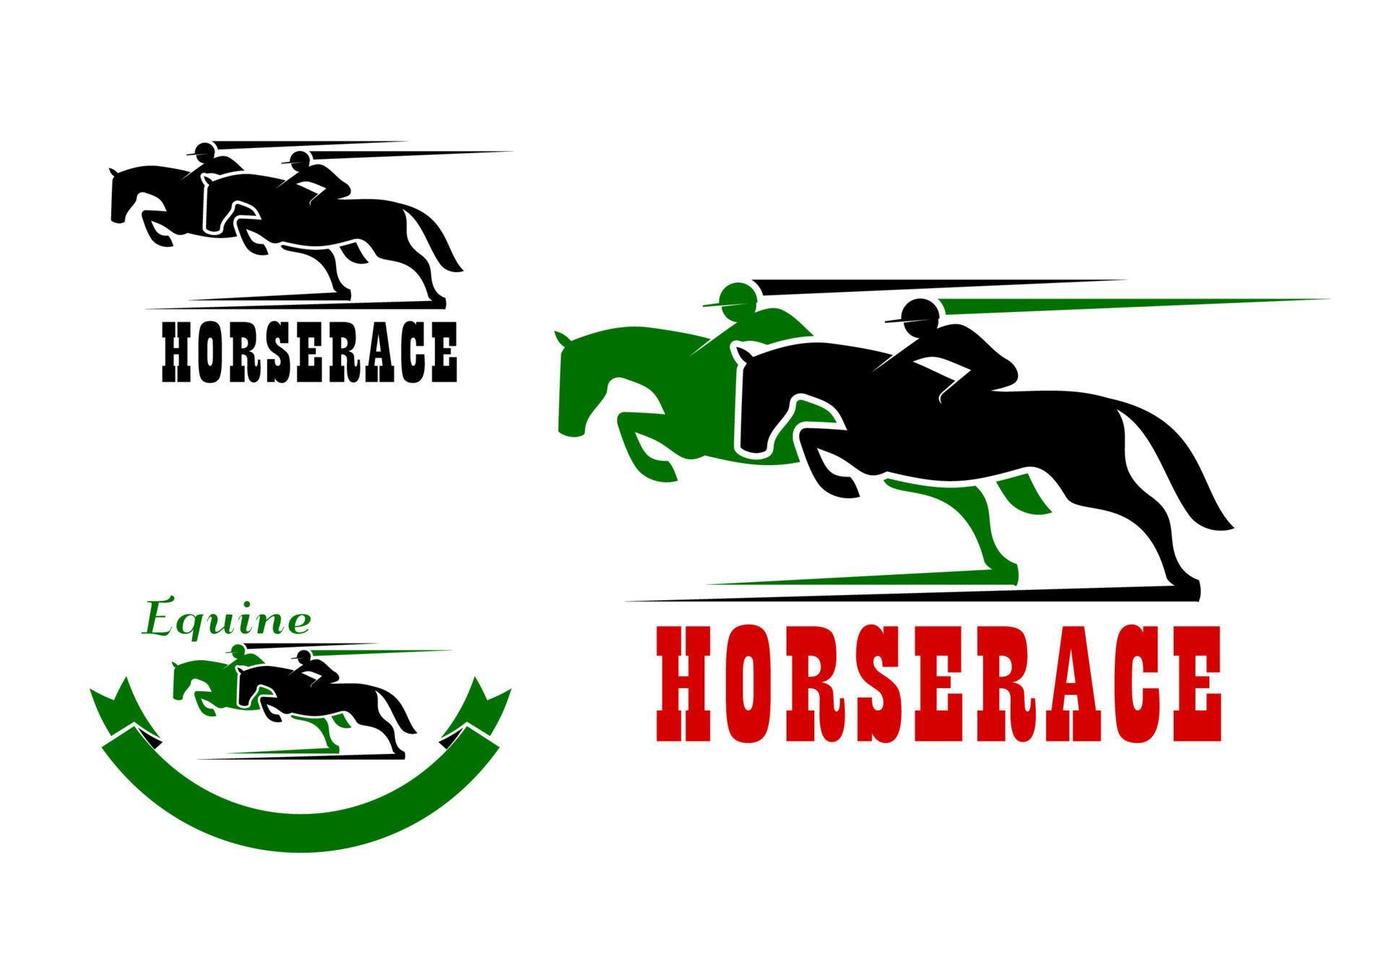 ikonen für pferderennen und pferdesport vektor